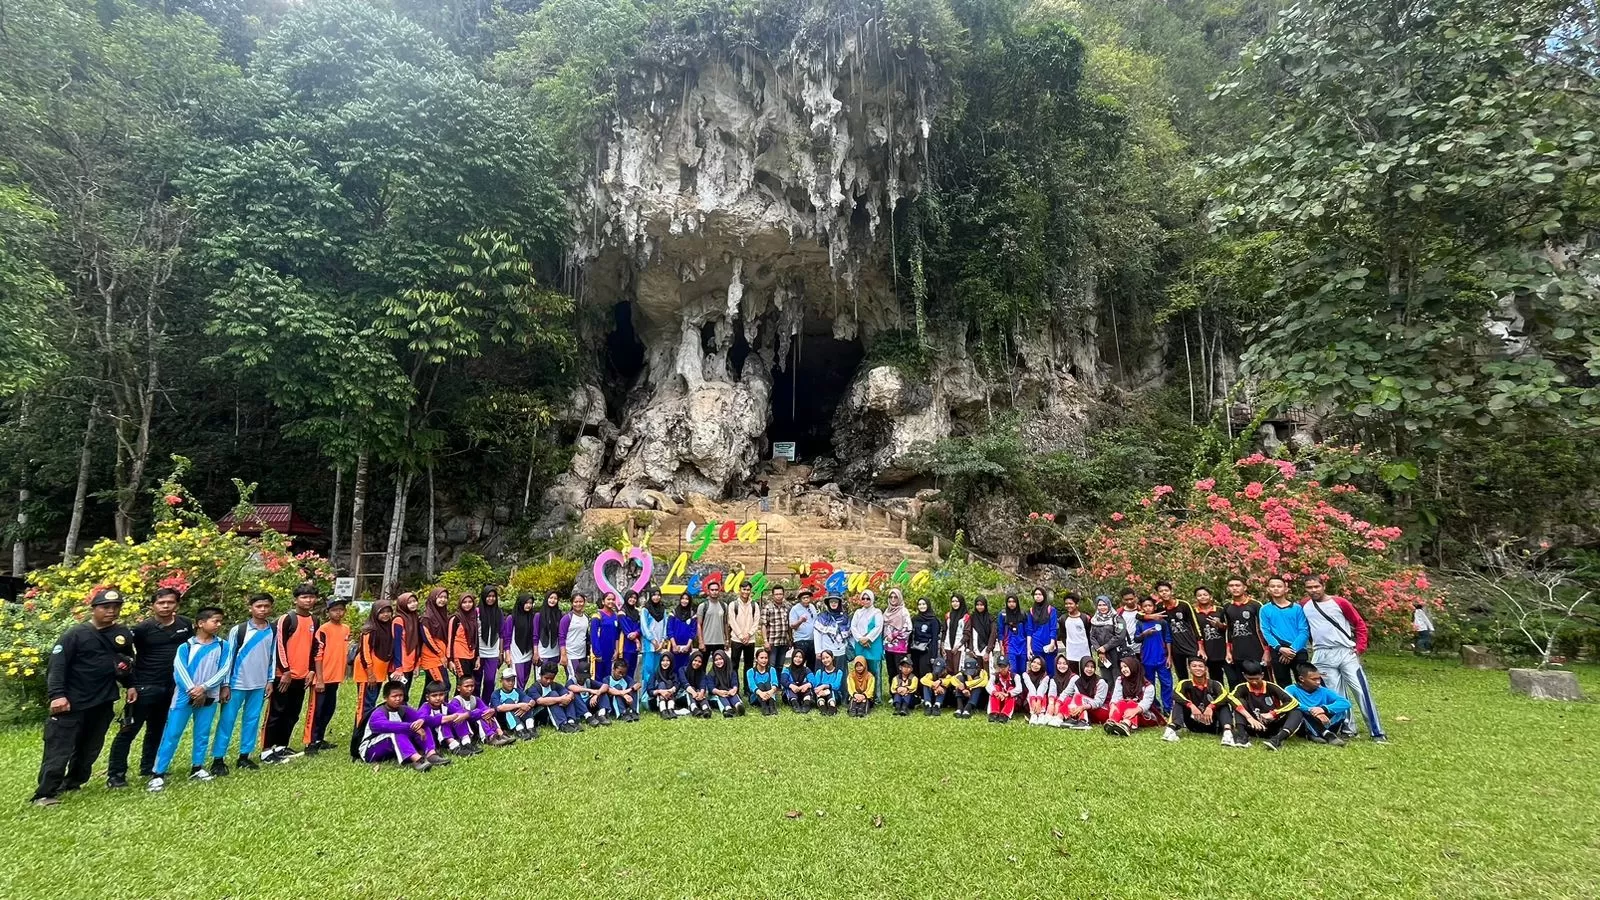 Pemkab Tanah Bumbu kenalkan Situs Cagar Budaya Liang Bangkai kepada pelajar setempat. Kegiatan ini bertujuan memperkenalkan arkeologi dan memperkokoh khazanah budaya bangsa